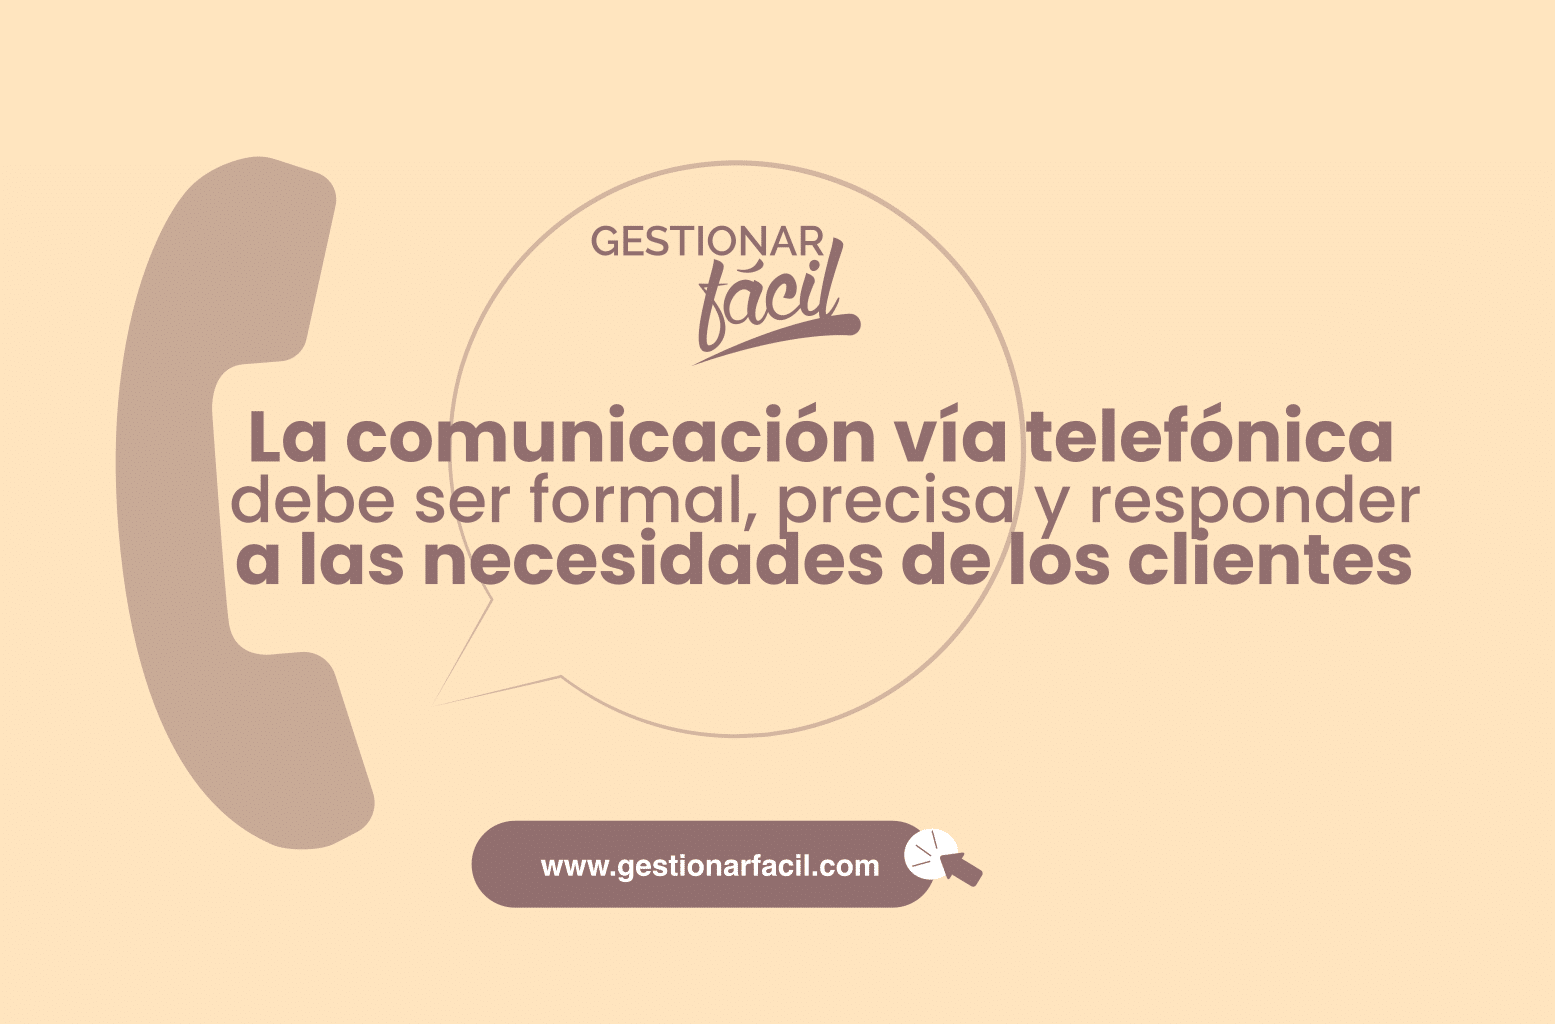 La comunicación vía telefónica debe ser formal, precisa y responder a las necesidades de los clientes.